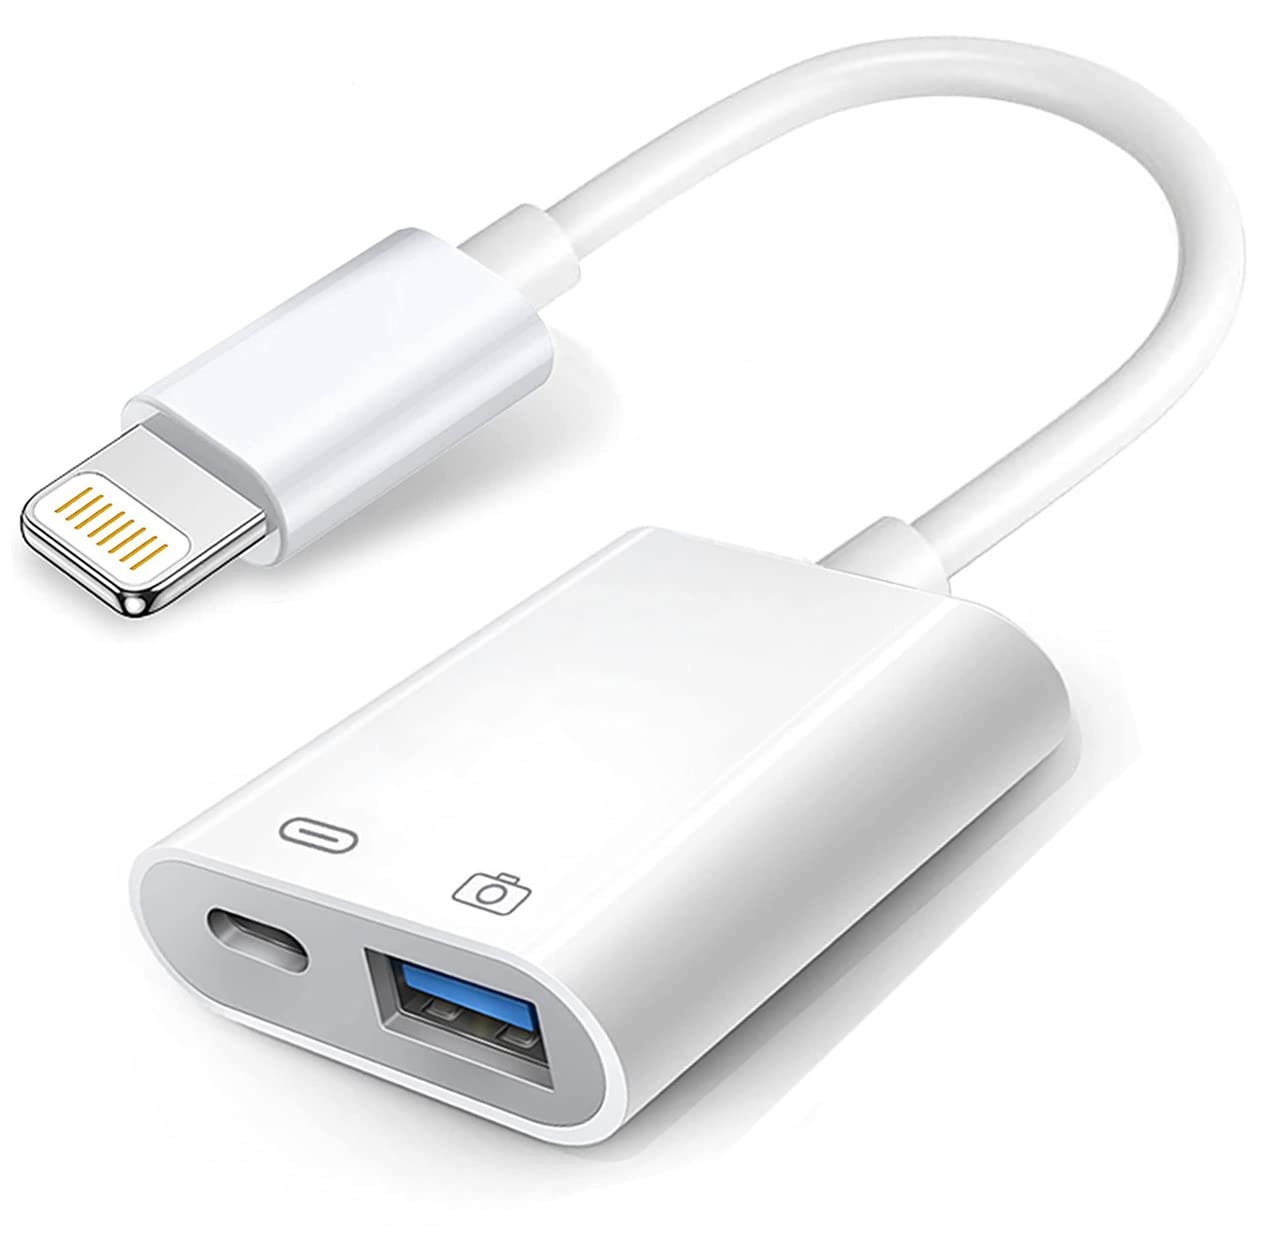 Kamera-Adapter Apple Lightning auf USB mit Ladeanschluss, USB-3.0-OTG-Kabel für iPhone/iPad zum Anschluss von Kartenleser, USB-Flash-Laufwerk, U-Disk, Tastatur, Maus, Hubs, MIDI, Plug-and-Play